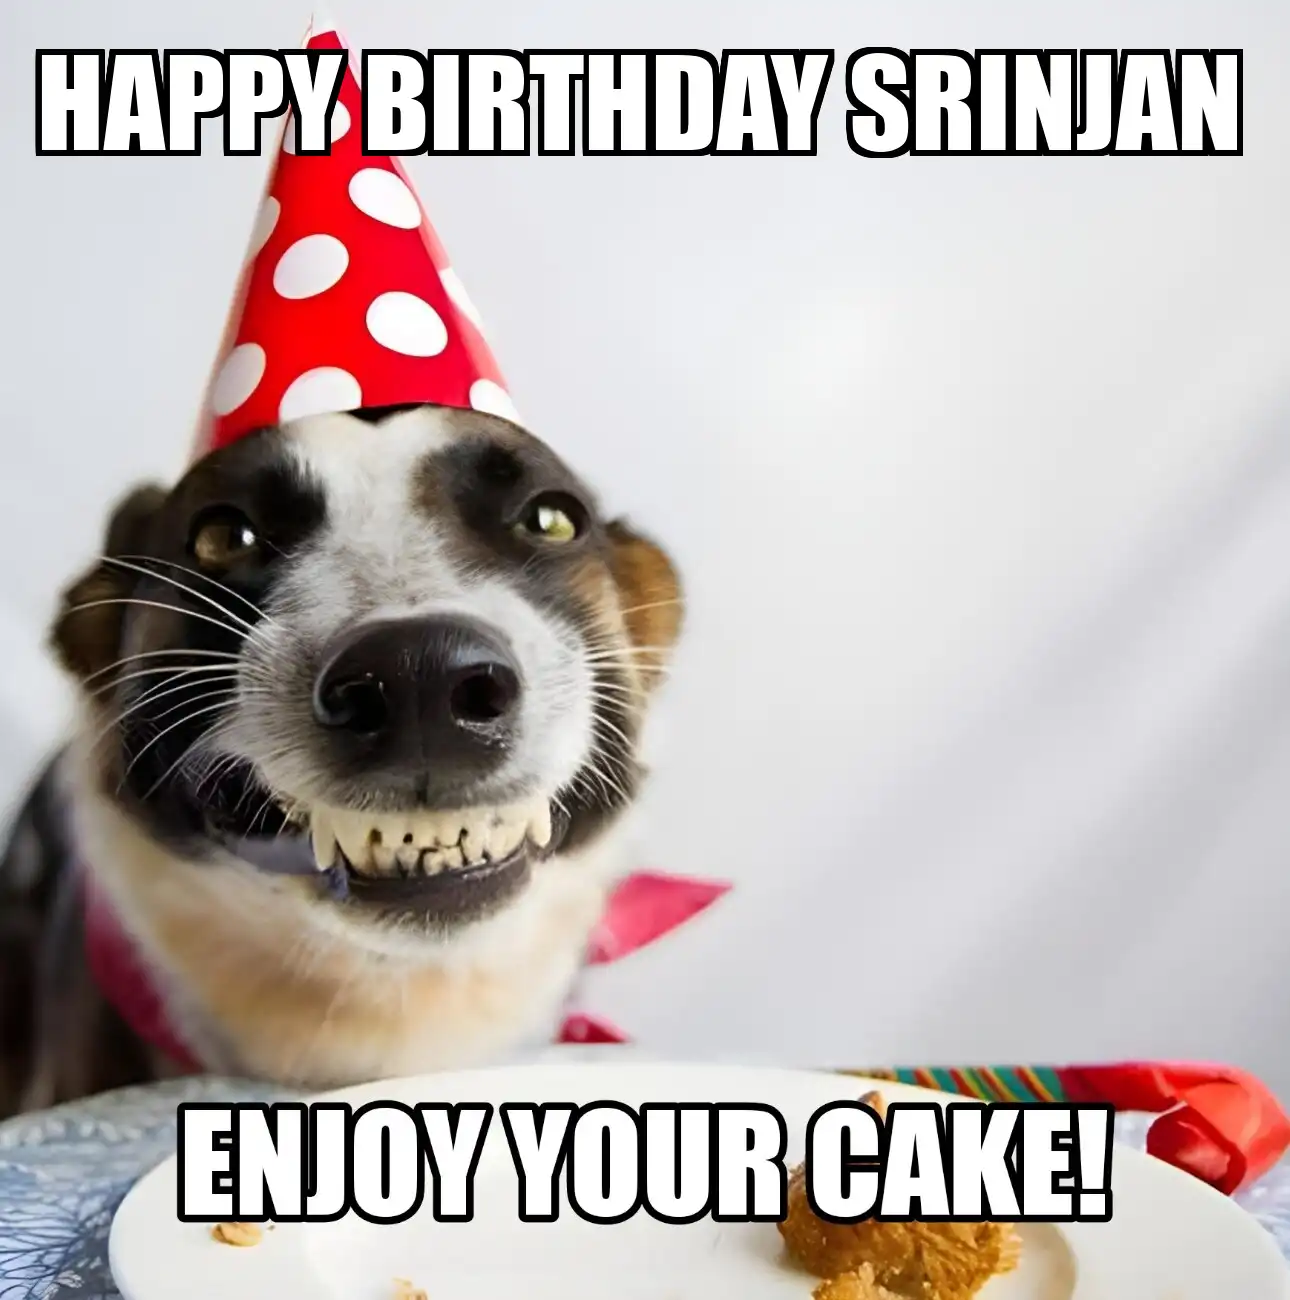 Happy Birthday Srinjan Enjoy Your Cake Dog Meme